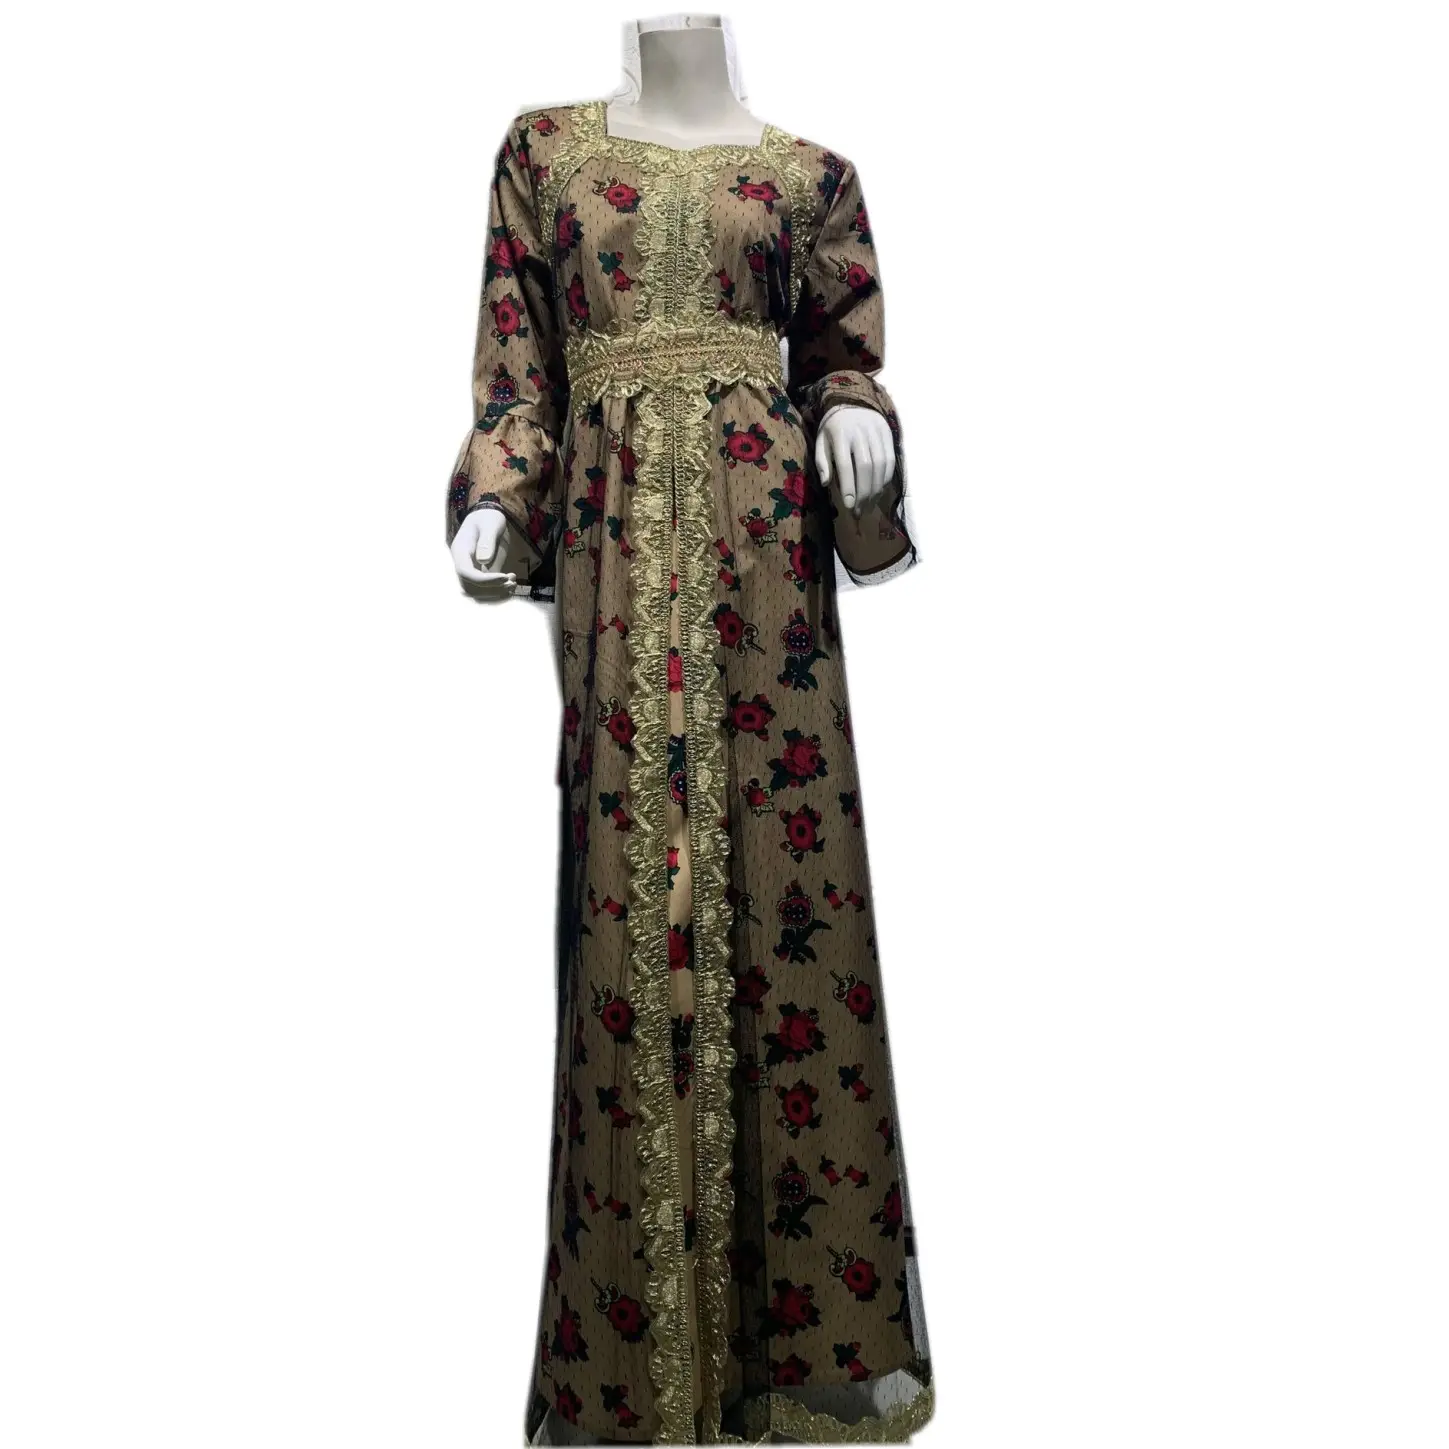 준비 배송 여성 전통 이슬람 여성 사우디 아랍 드레스 Fower 피는 긴 소매 맥시 길이 카디건 가운 새시